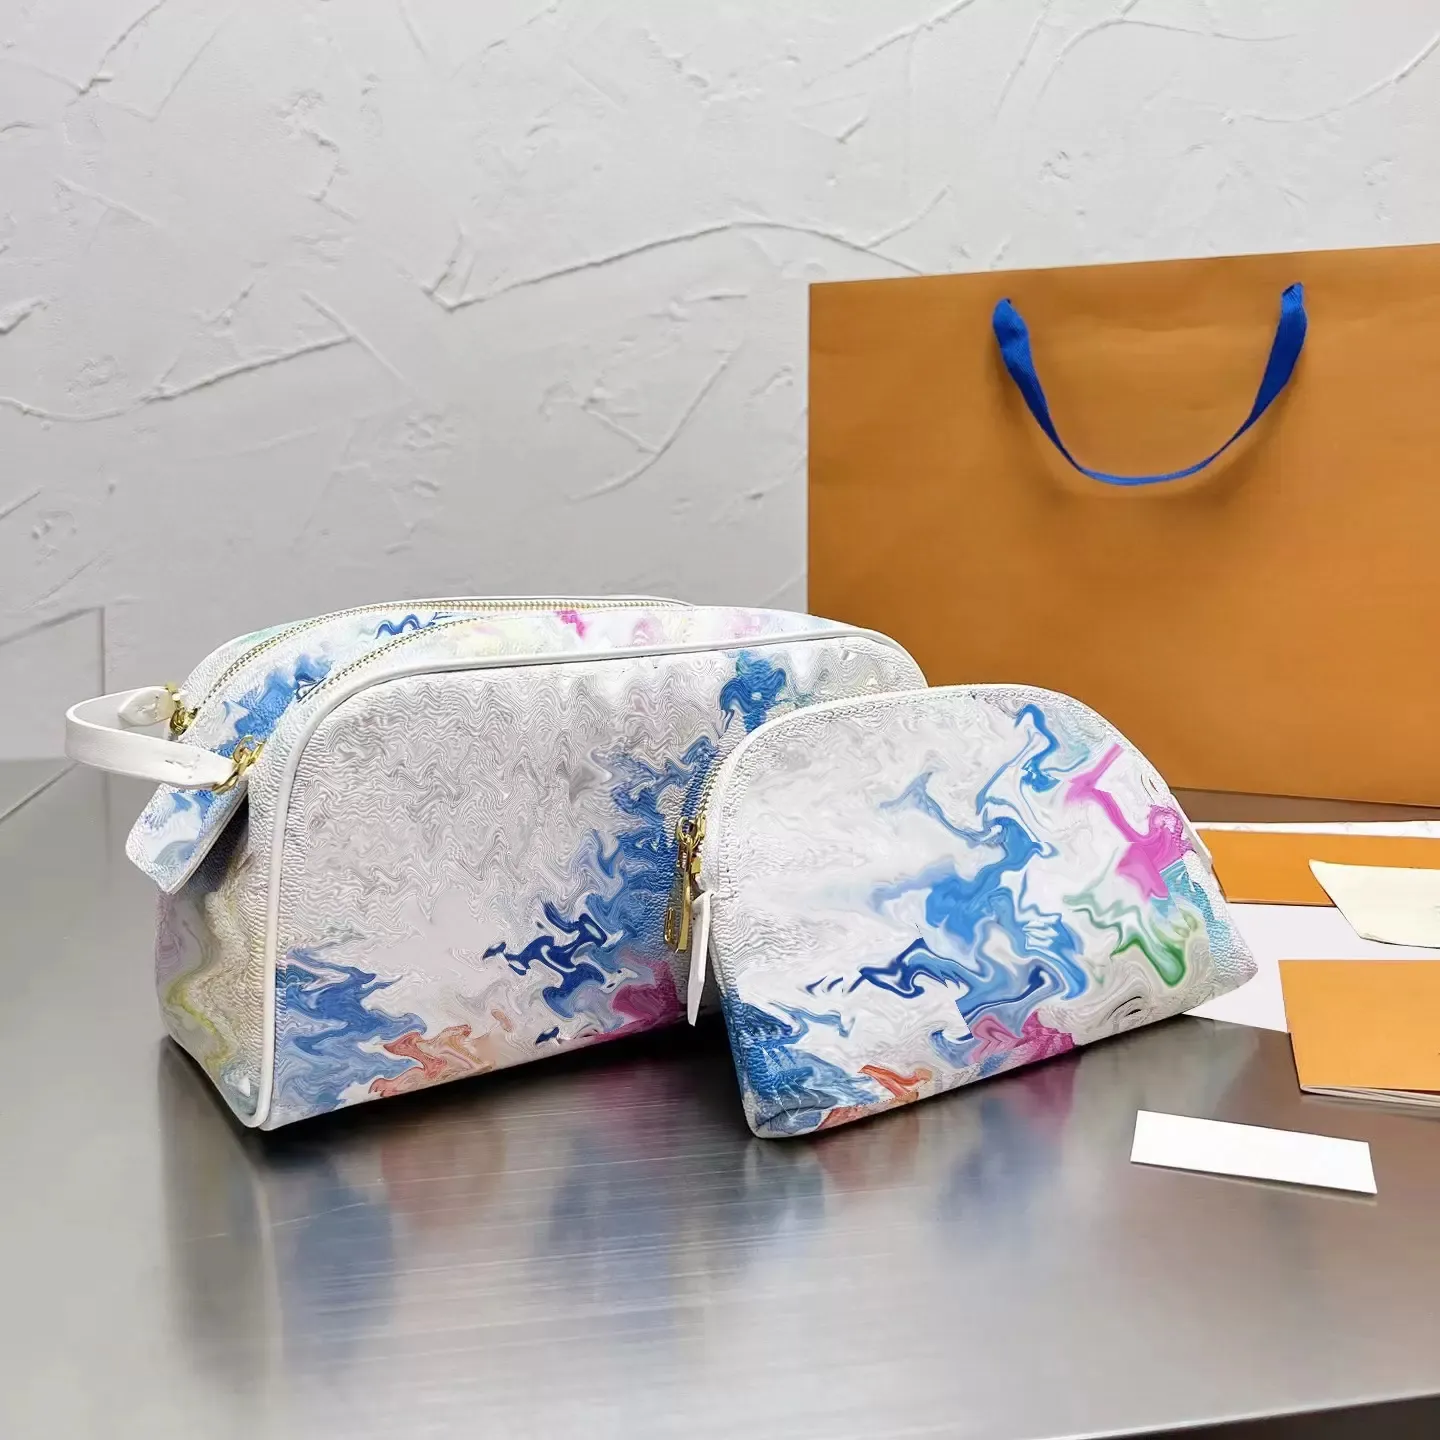 designer borse per il trucco borsa da toilette di alta qualità lusso uomo donna borsa per cosmetici borsa per trucco moda per viaggi vacanze viaggi d'affari custodie essenziali